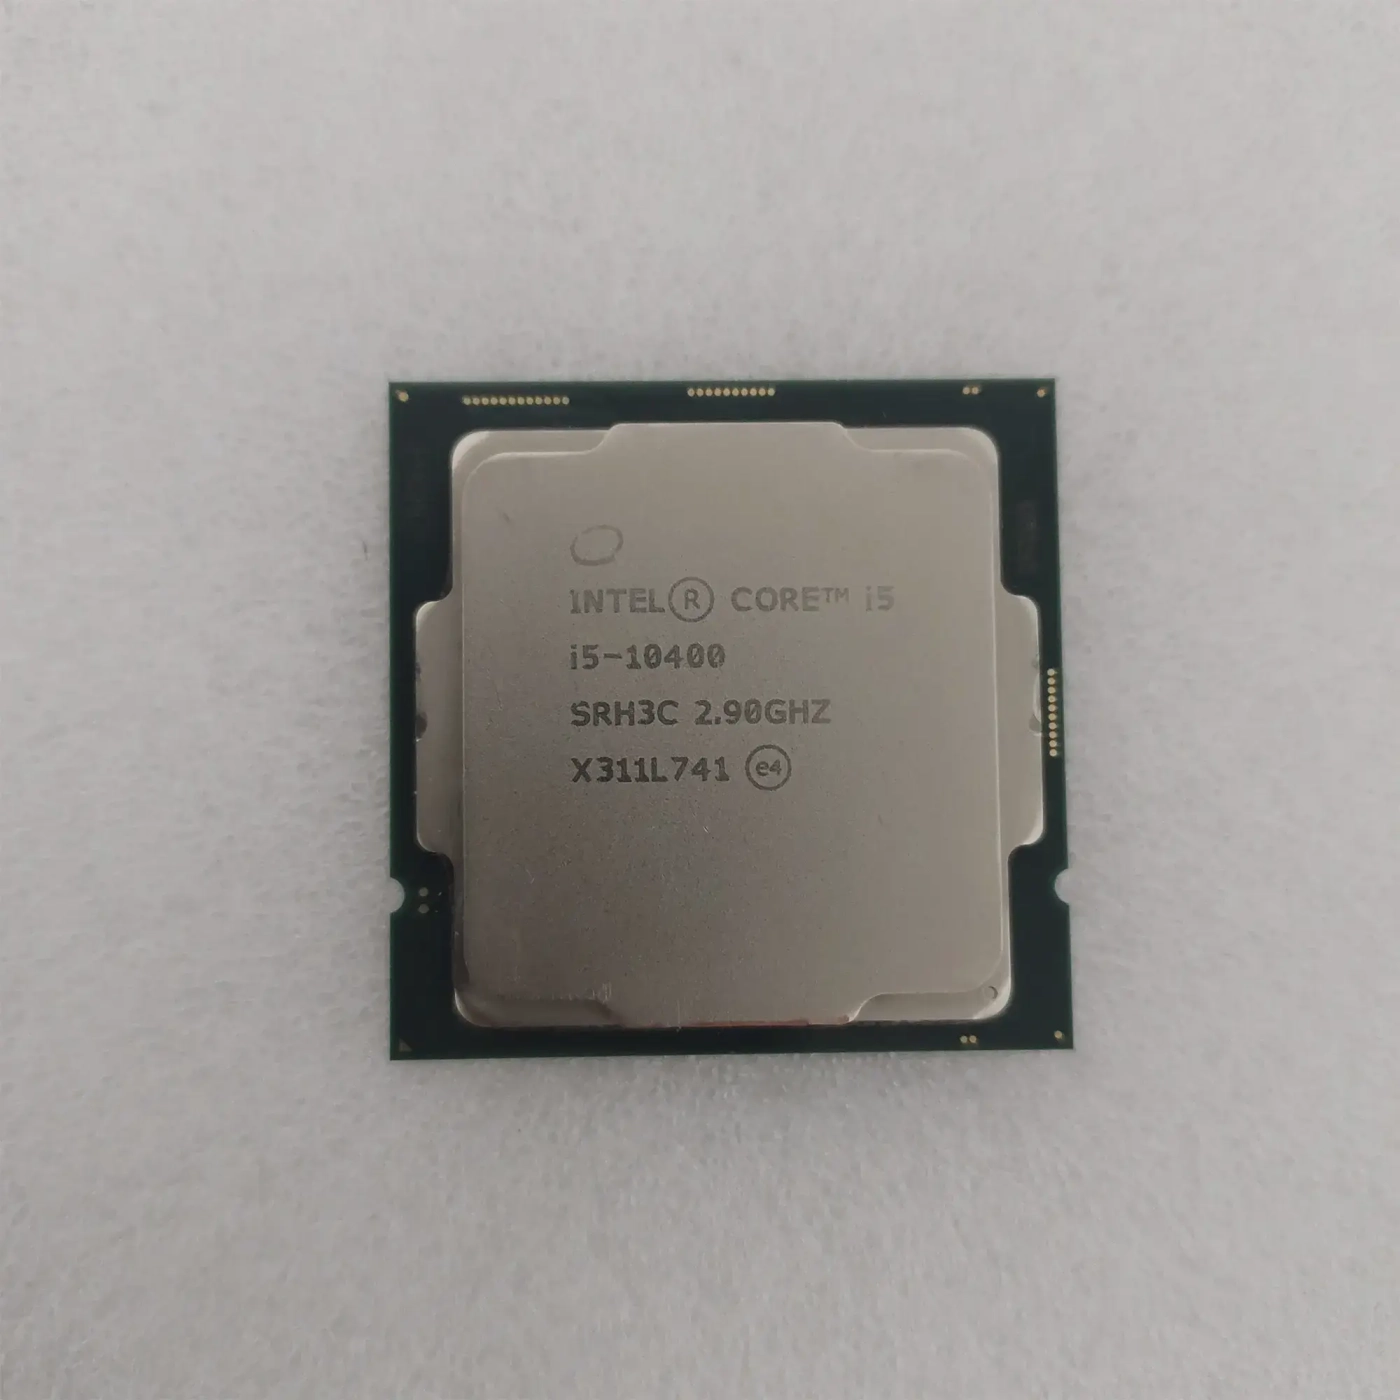 Купить Процессор INTEL Core i5-10400 (2.9GHz, 12MB, LGA1200) BOX (BX8070110400) (Trade-In SN U3T01F5101699) - фото 2